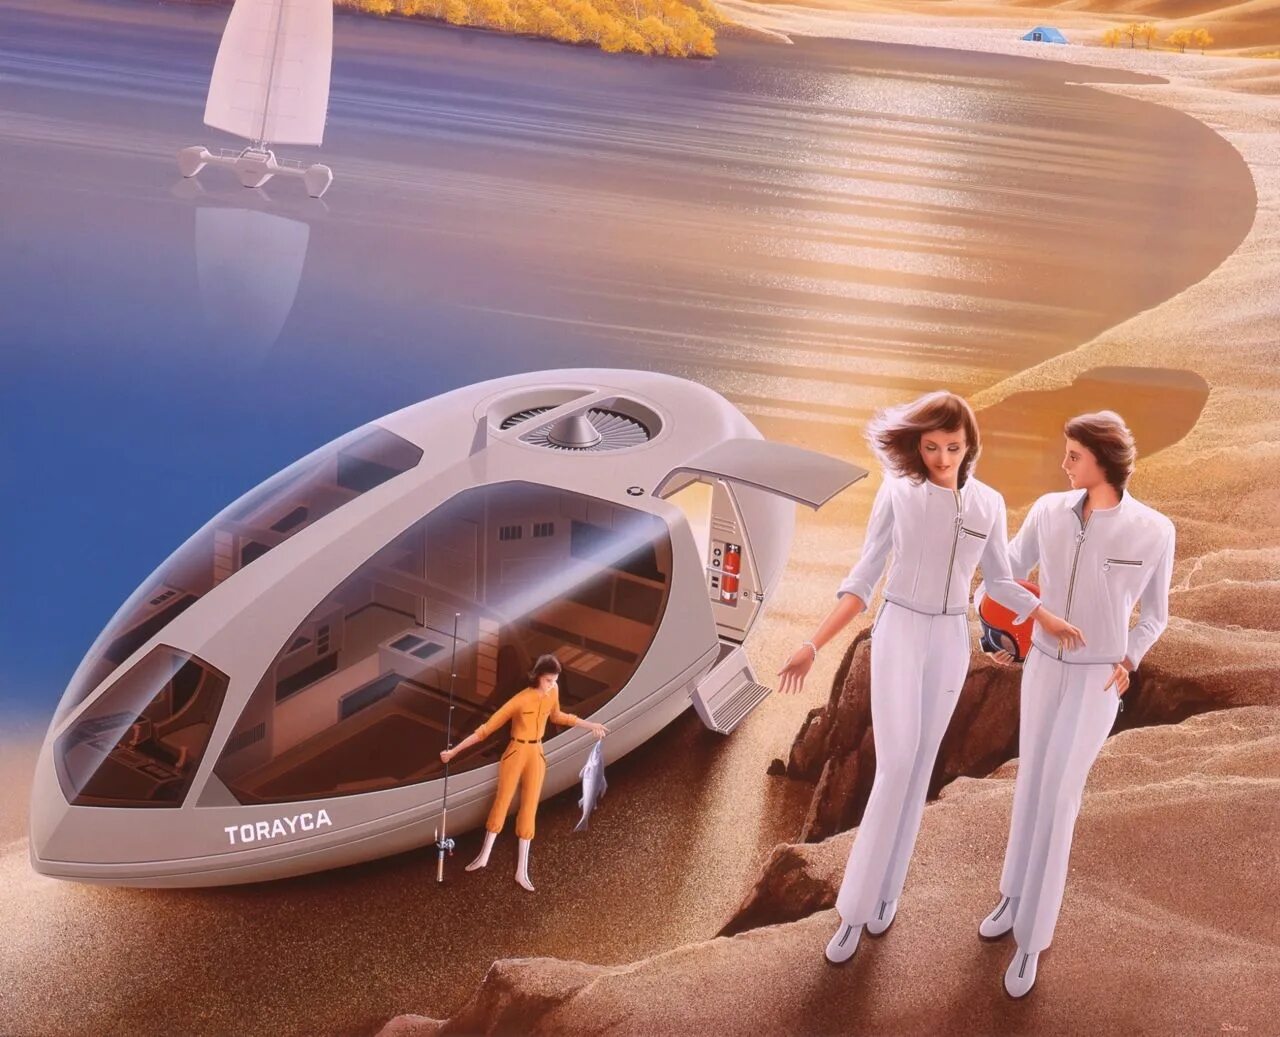 Transcending the future with. Shusei Nagaoka. Машины будущего. Транспорт будущего. Космический туризм будущего.